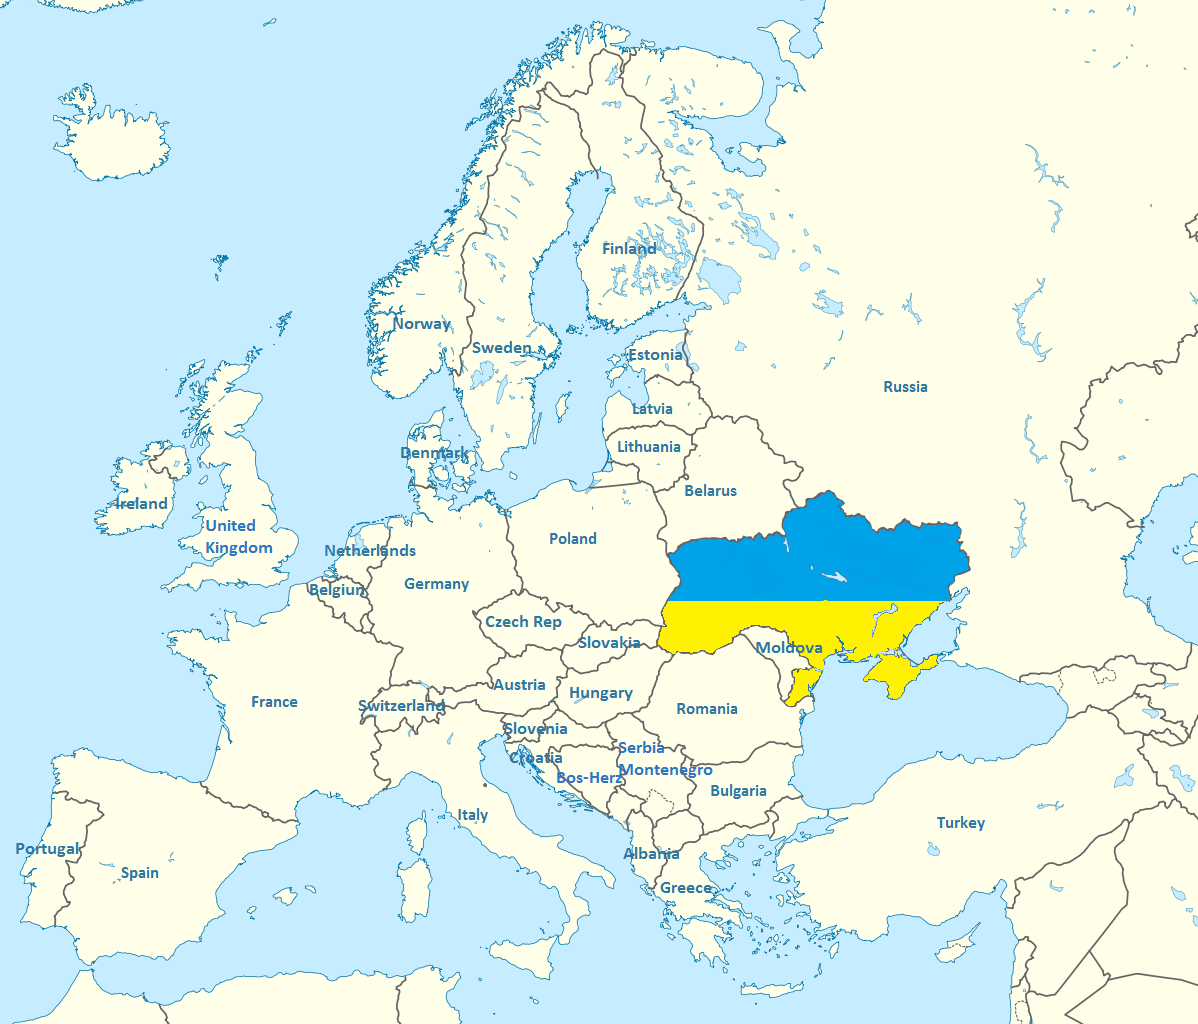 https://3.bp.blogspot.com/-ZIWnETotUPk/VAnWDzrkmwI/AAAAAAAAAxk/wSXYy3XegJQ/s1600/1198px-Ukraine_in_Europe_-rivers_-mini_map_svg.png